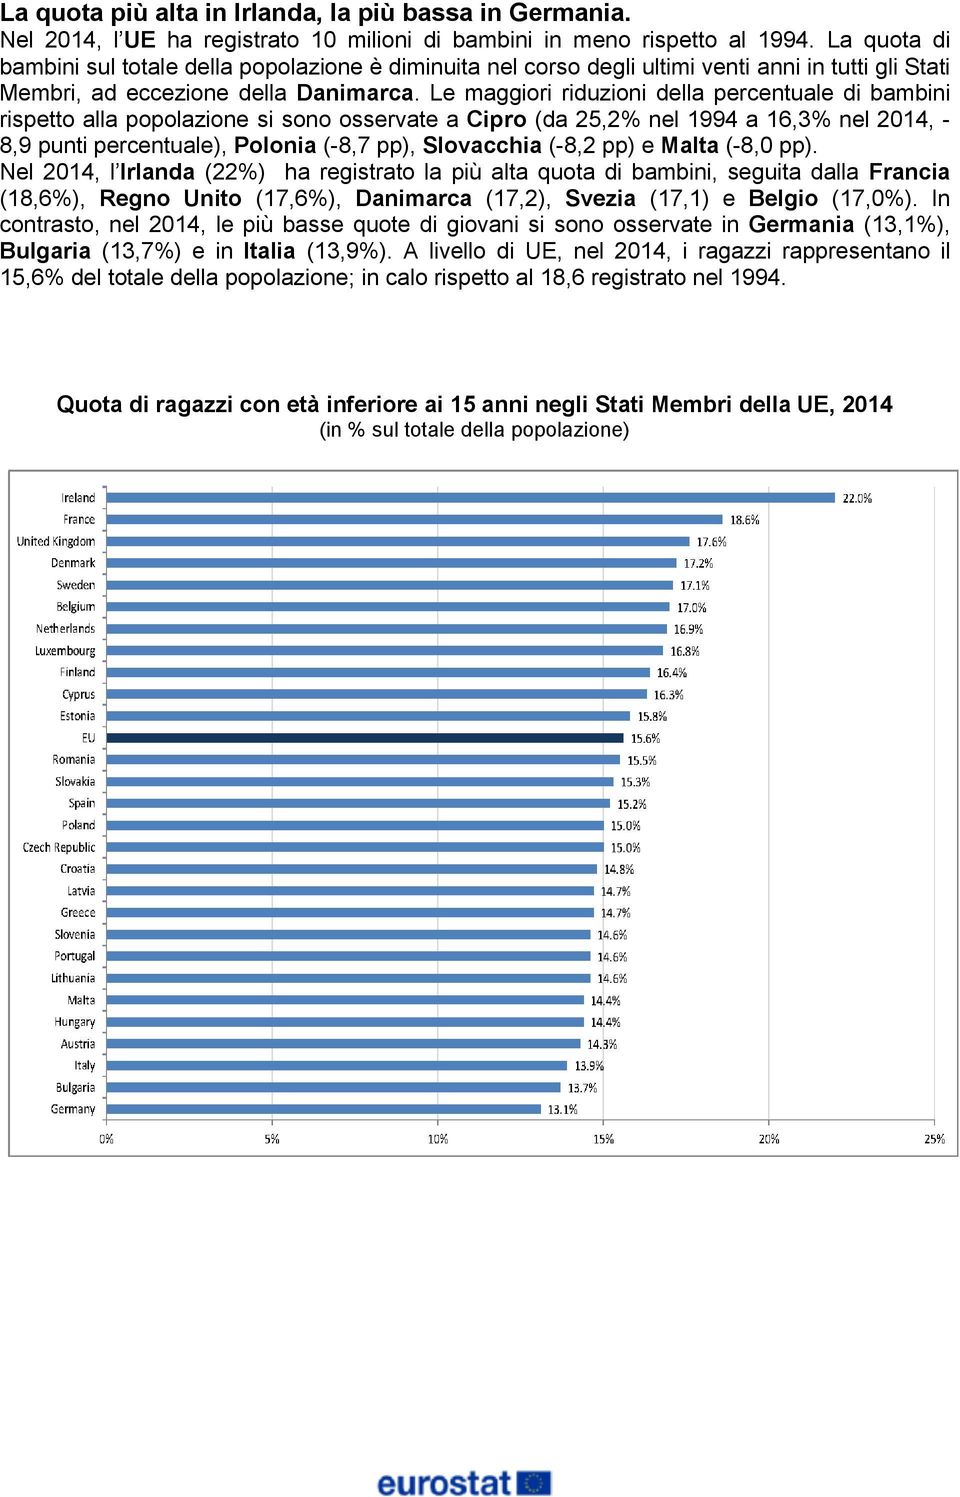 Le maggiori riduzioni della percentuale di bambini rispetto alla popolazione si sono osservate a Cipro (da 25,2% nel 1994 a 16,3% nel 2014, - 8,9 punti percentuale), Polonia (-8,7 pp), Slovacchia